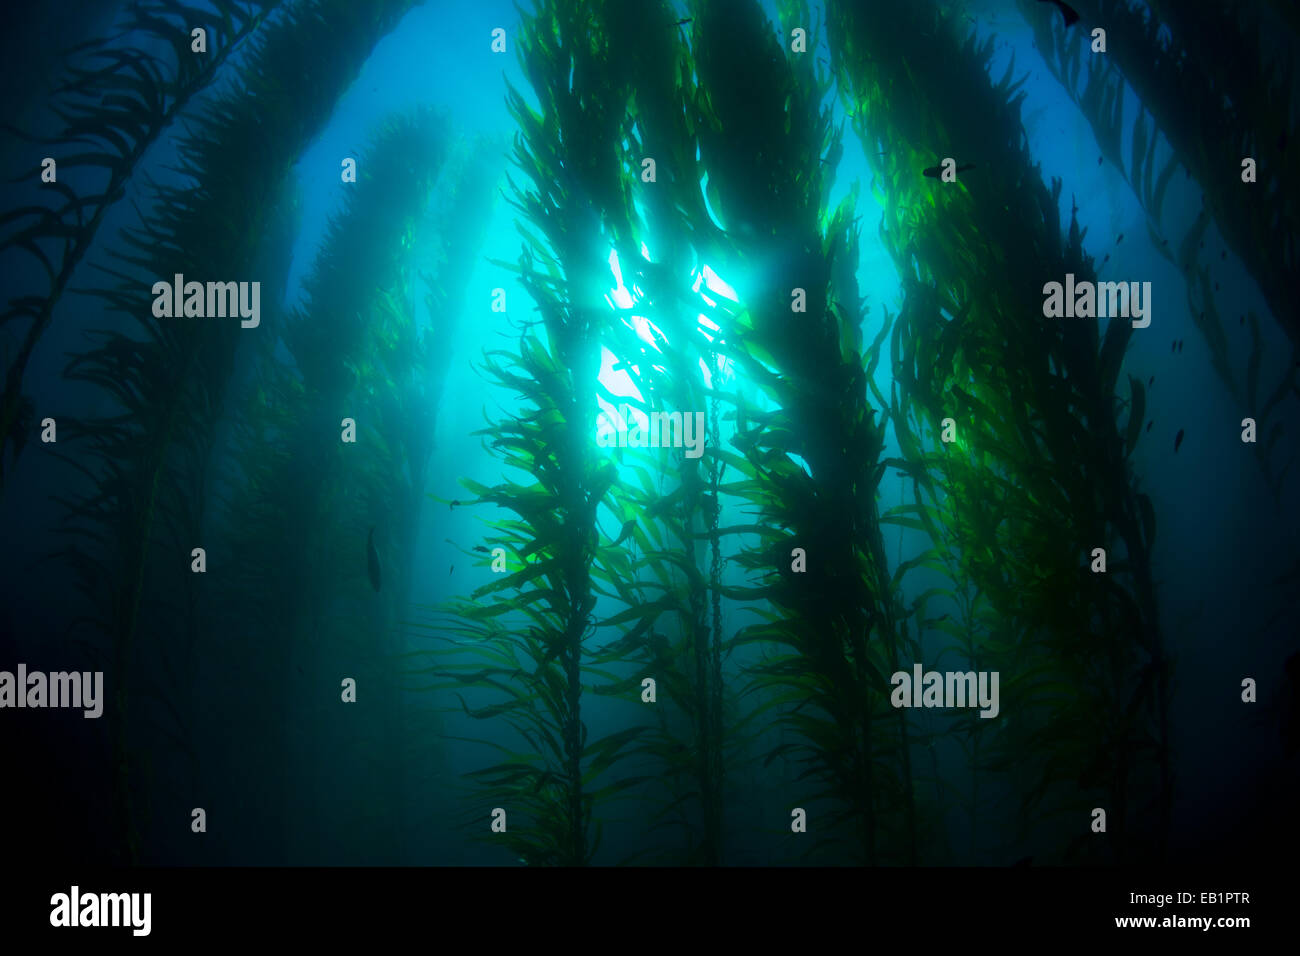 Splendidi fondali kelp forest in acqua chiara mostra i raggi del sole penetrano il gigante piante. Foto Stock